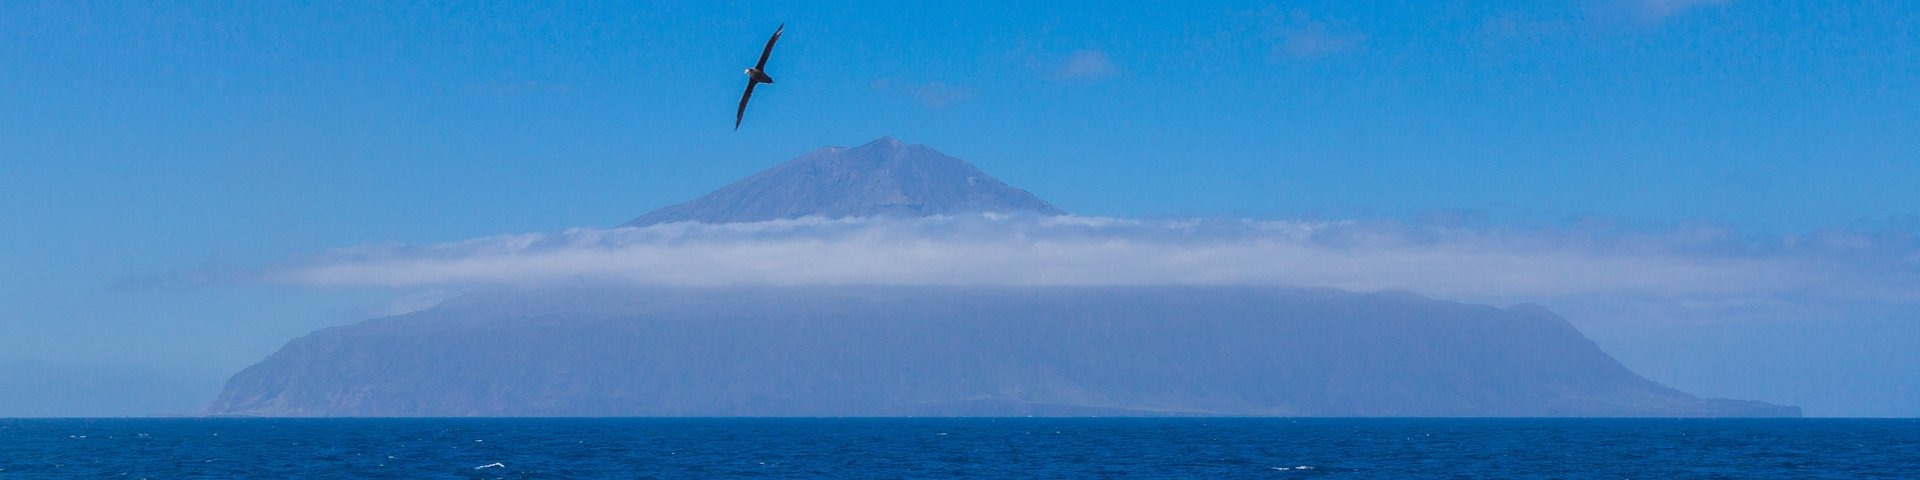 Tristan da Cunha ist in Sicht